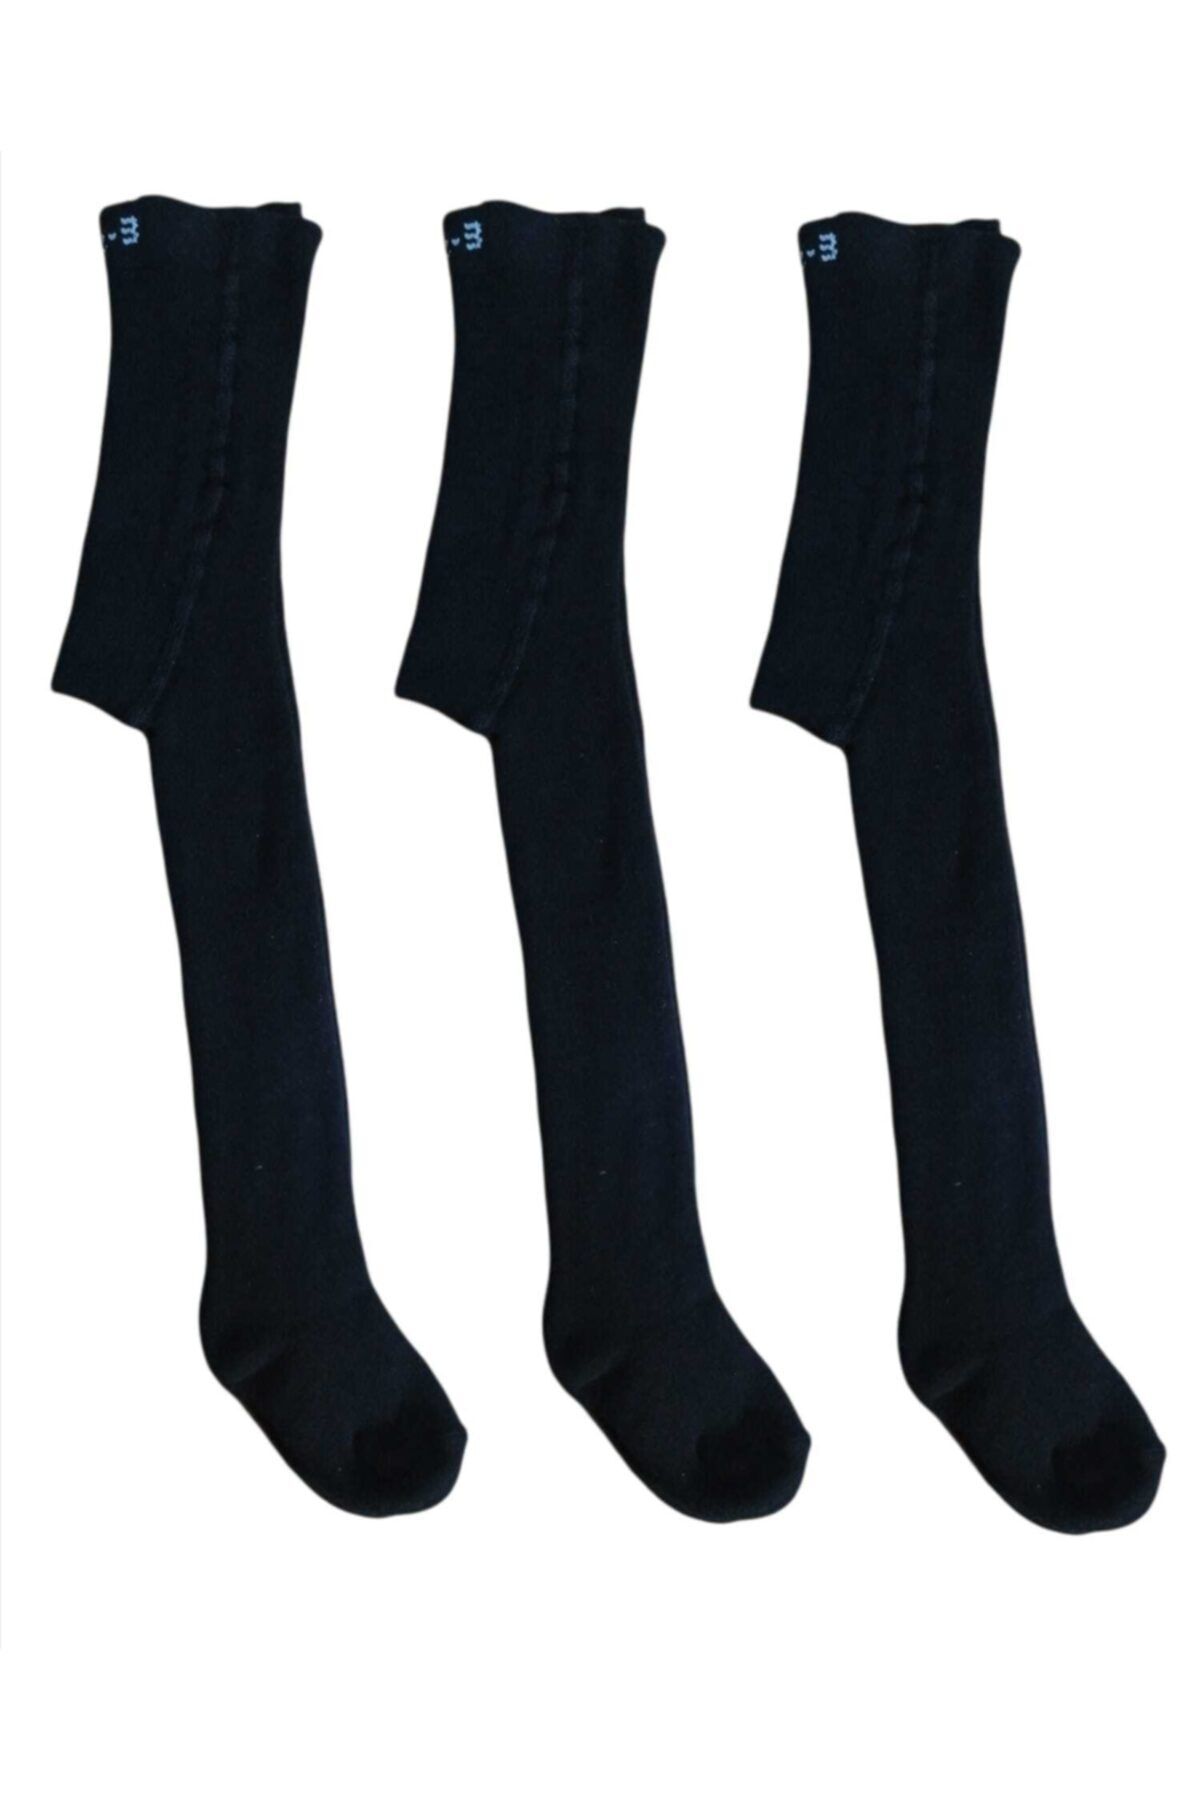 İpek Çocuk Havlu Külotlu Çorap Siyah 3 Lü